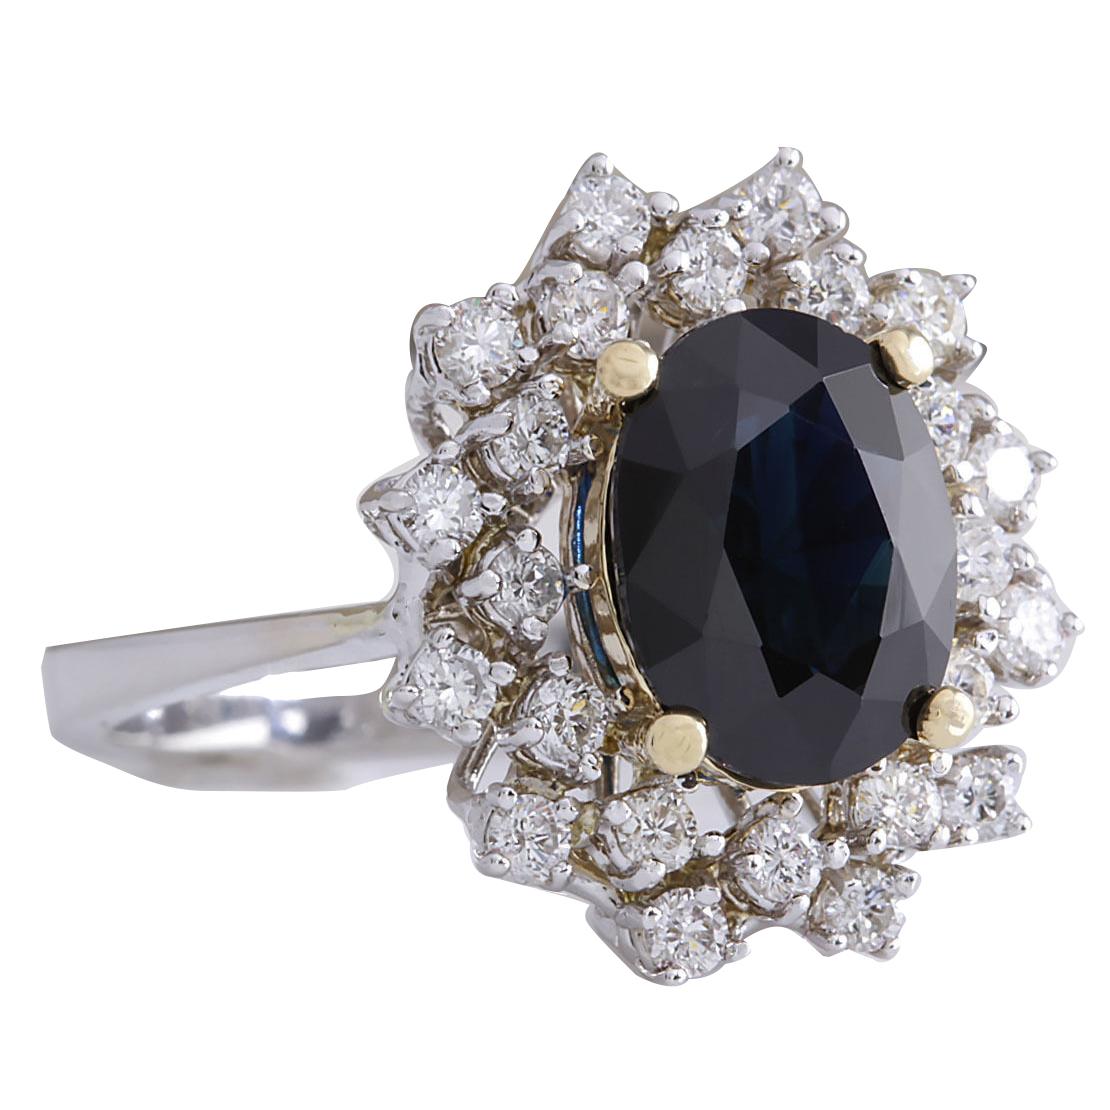 4.83 Carat Natural Sapphire 14 Karat White Gold Diamond Ring
Stamped: 14K White Gold
Total Ring Weight: 7.5 Grams
Total Natural Sapphire Weight is 4.03 Carat (Measures: 11.00x9.00 mm)
Color: Blue
Total Natural Diamond Weight is 0.80 Carat
Color: